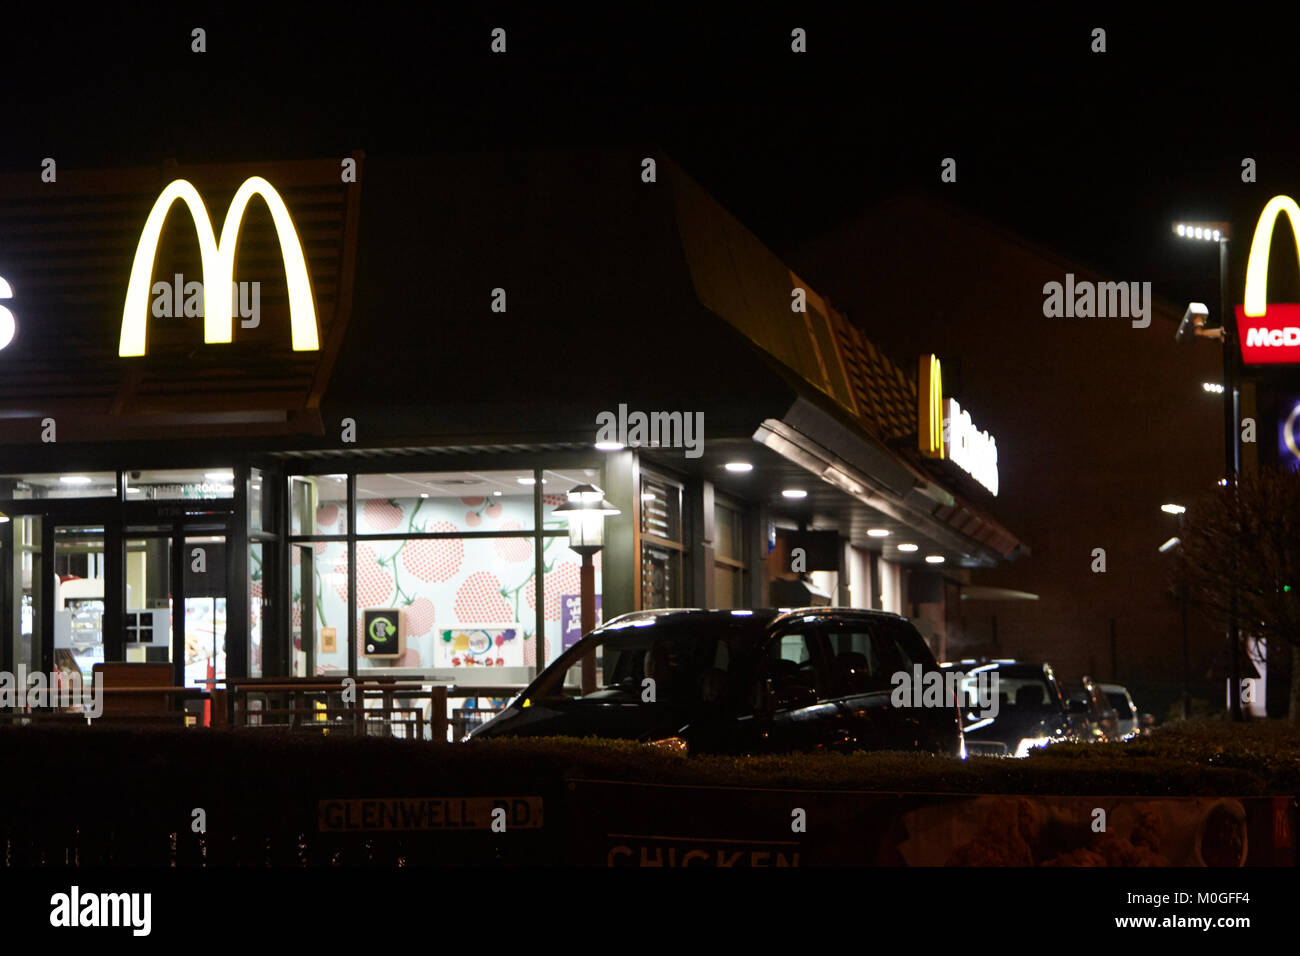 Mcdonalds Restaurant fahren Sie durch in der Nacht in der Uk Stockfoto